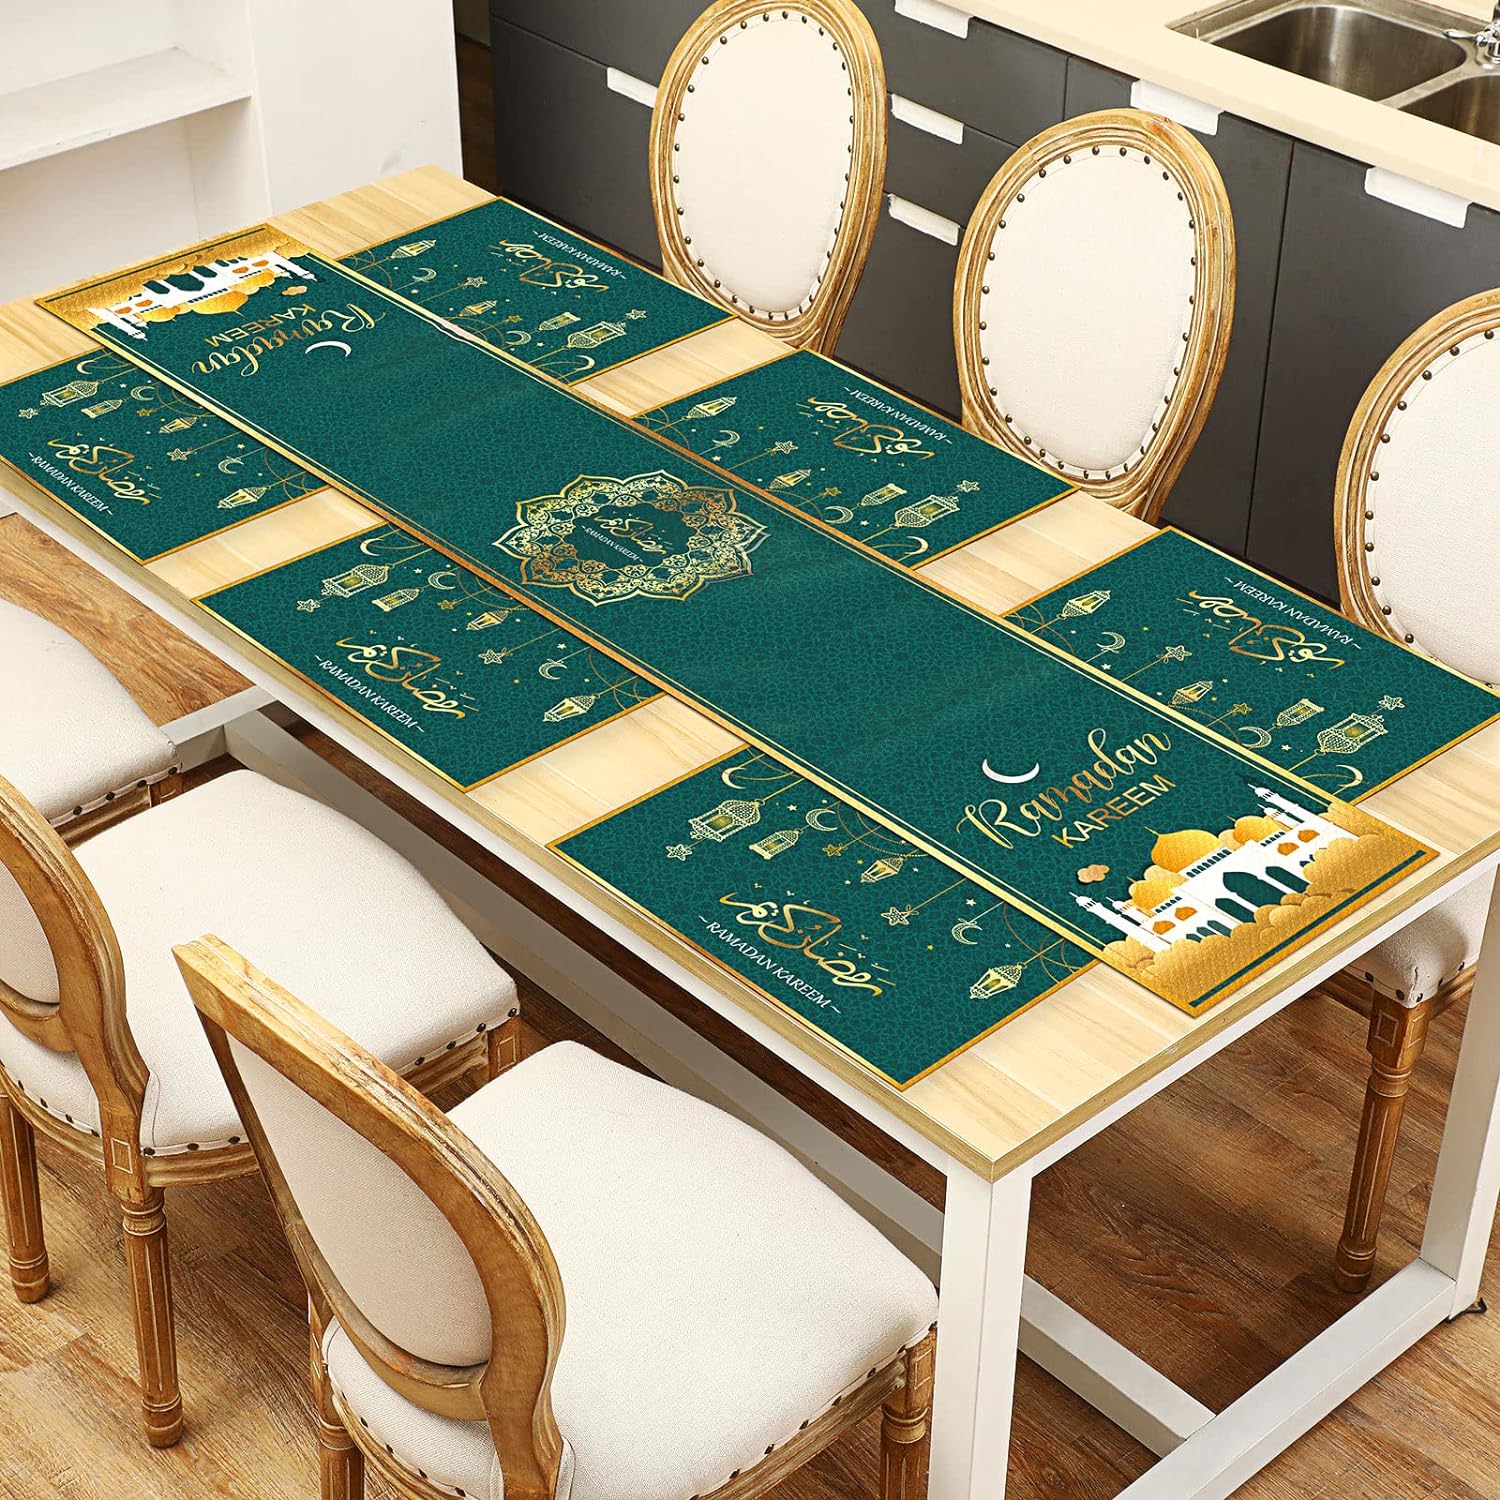 مجموعة مفارش طاولة بتصميم فانوس وقمر ونجوم 7 قطع من تيامون